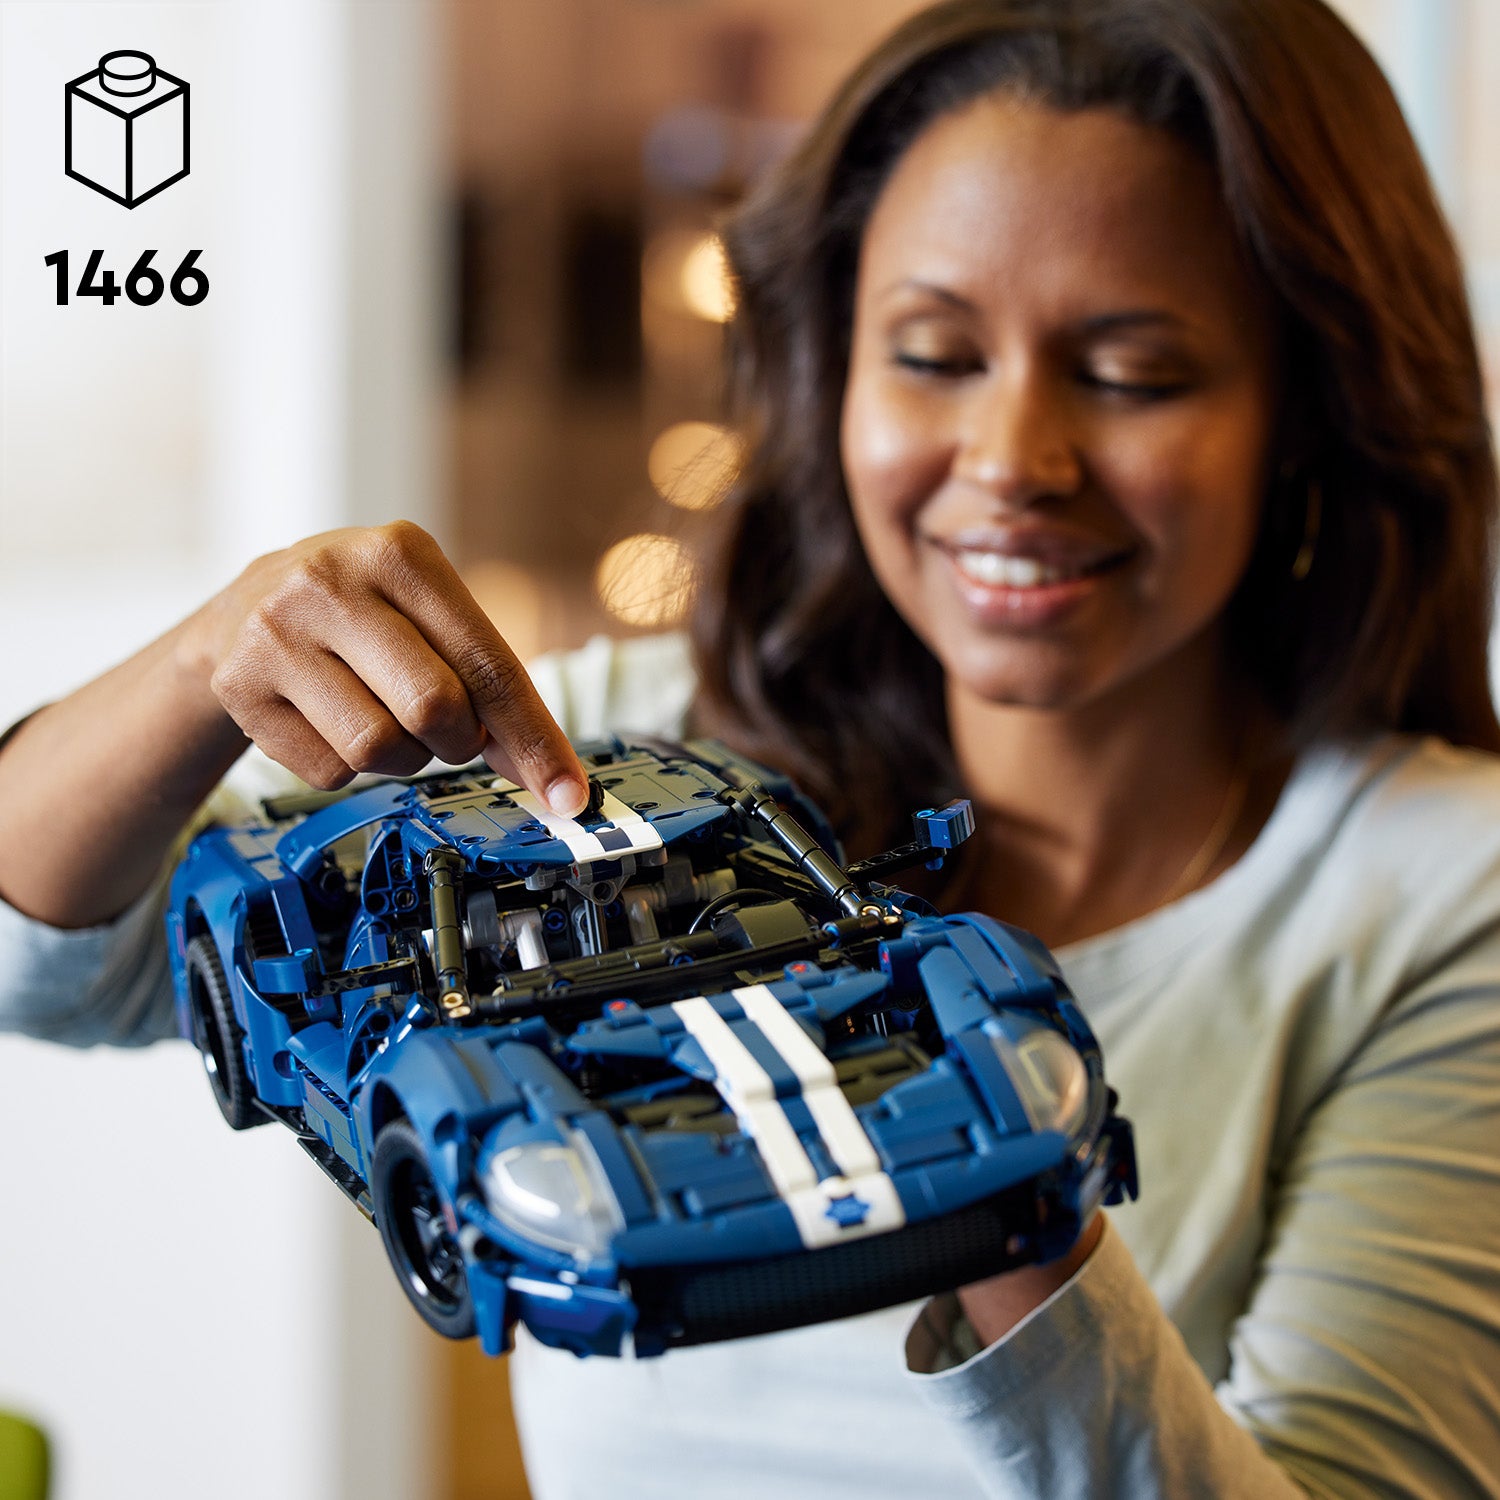 Lego 42154 2022 Ford GT